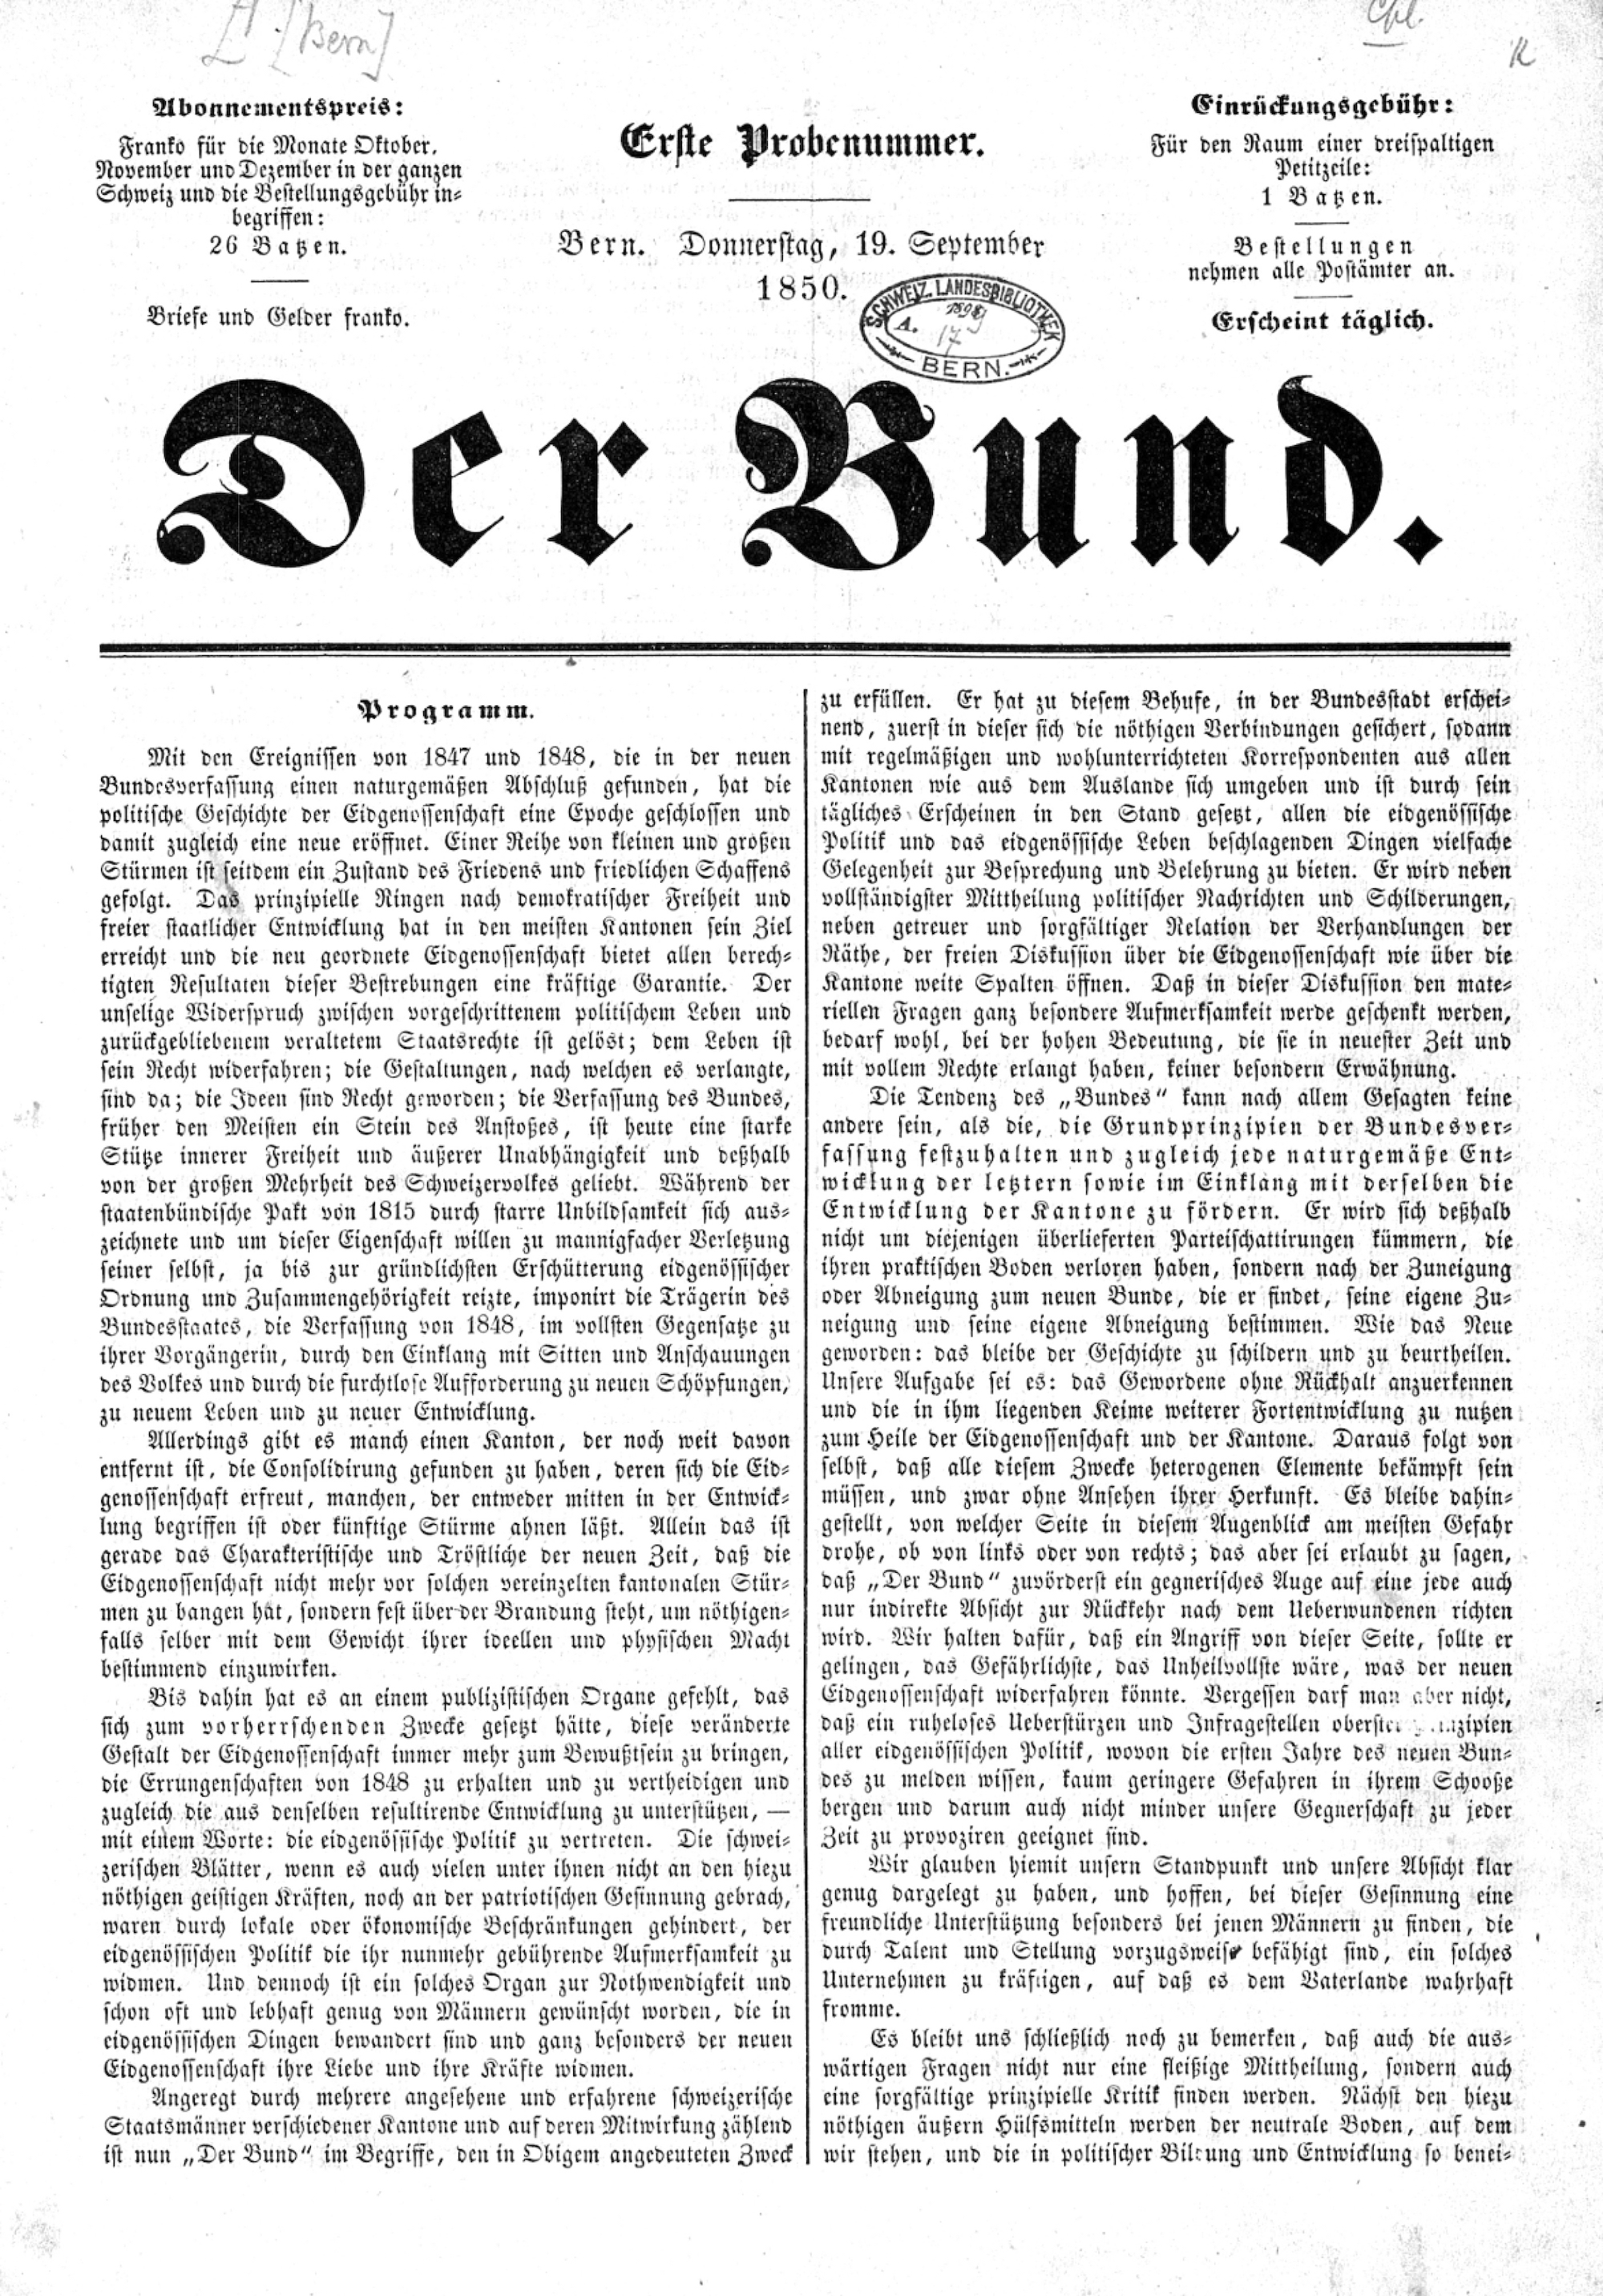 «Der Bund» kann bis zurück zur ersten Ausgabe von 19.September 1850 im Volltext elektronisch durchsucht werden.